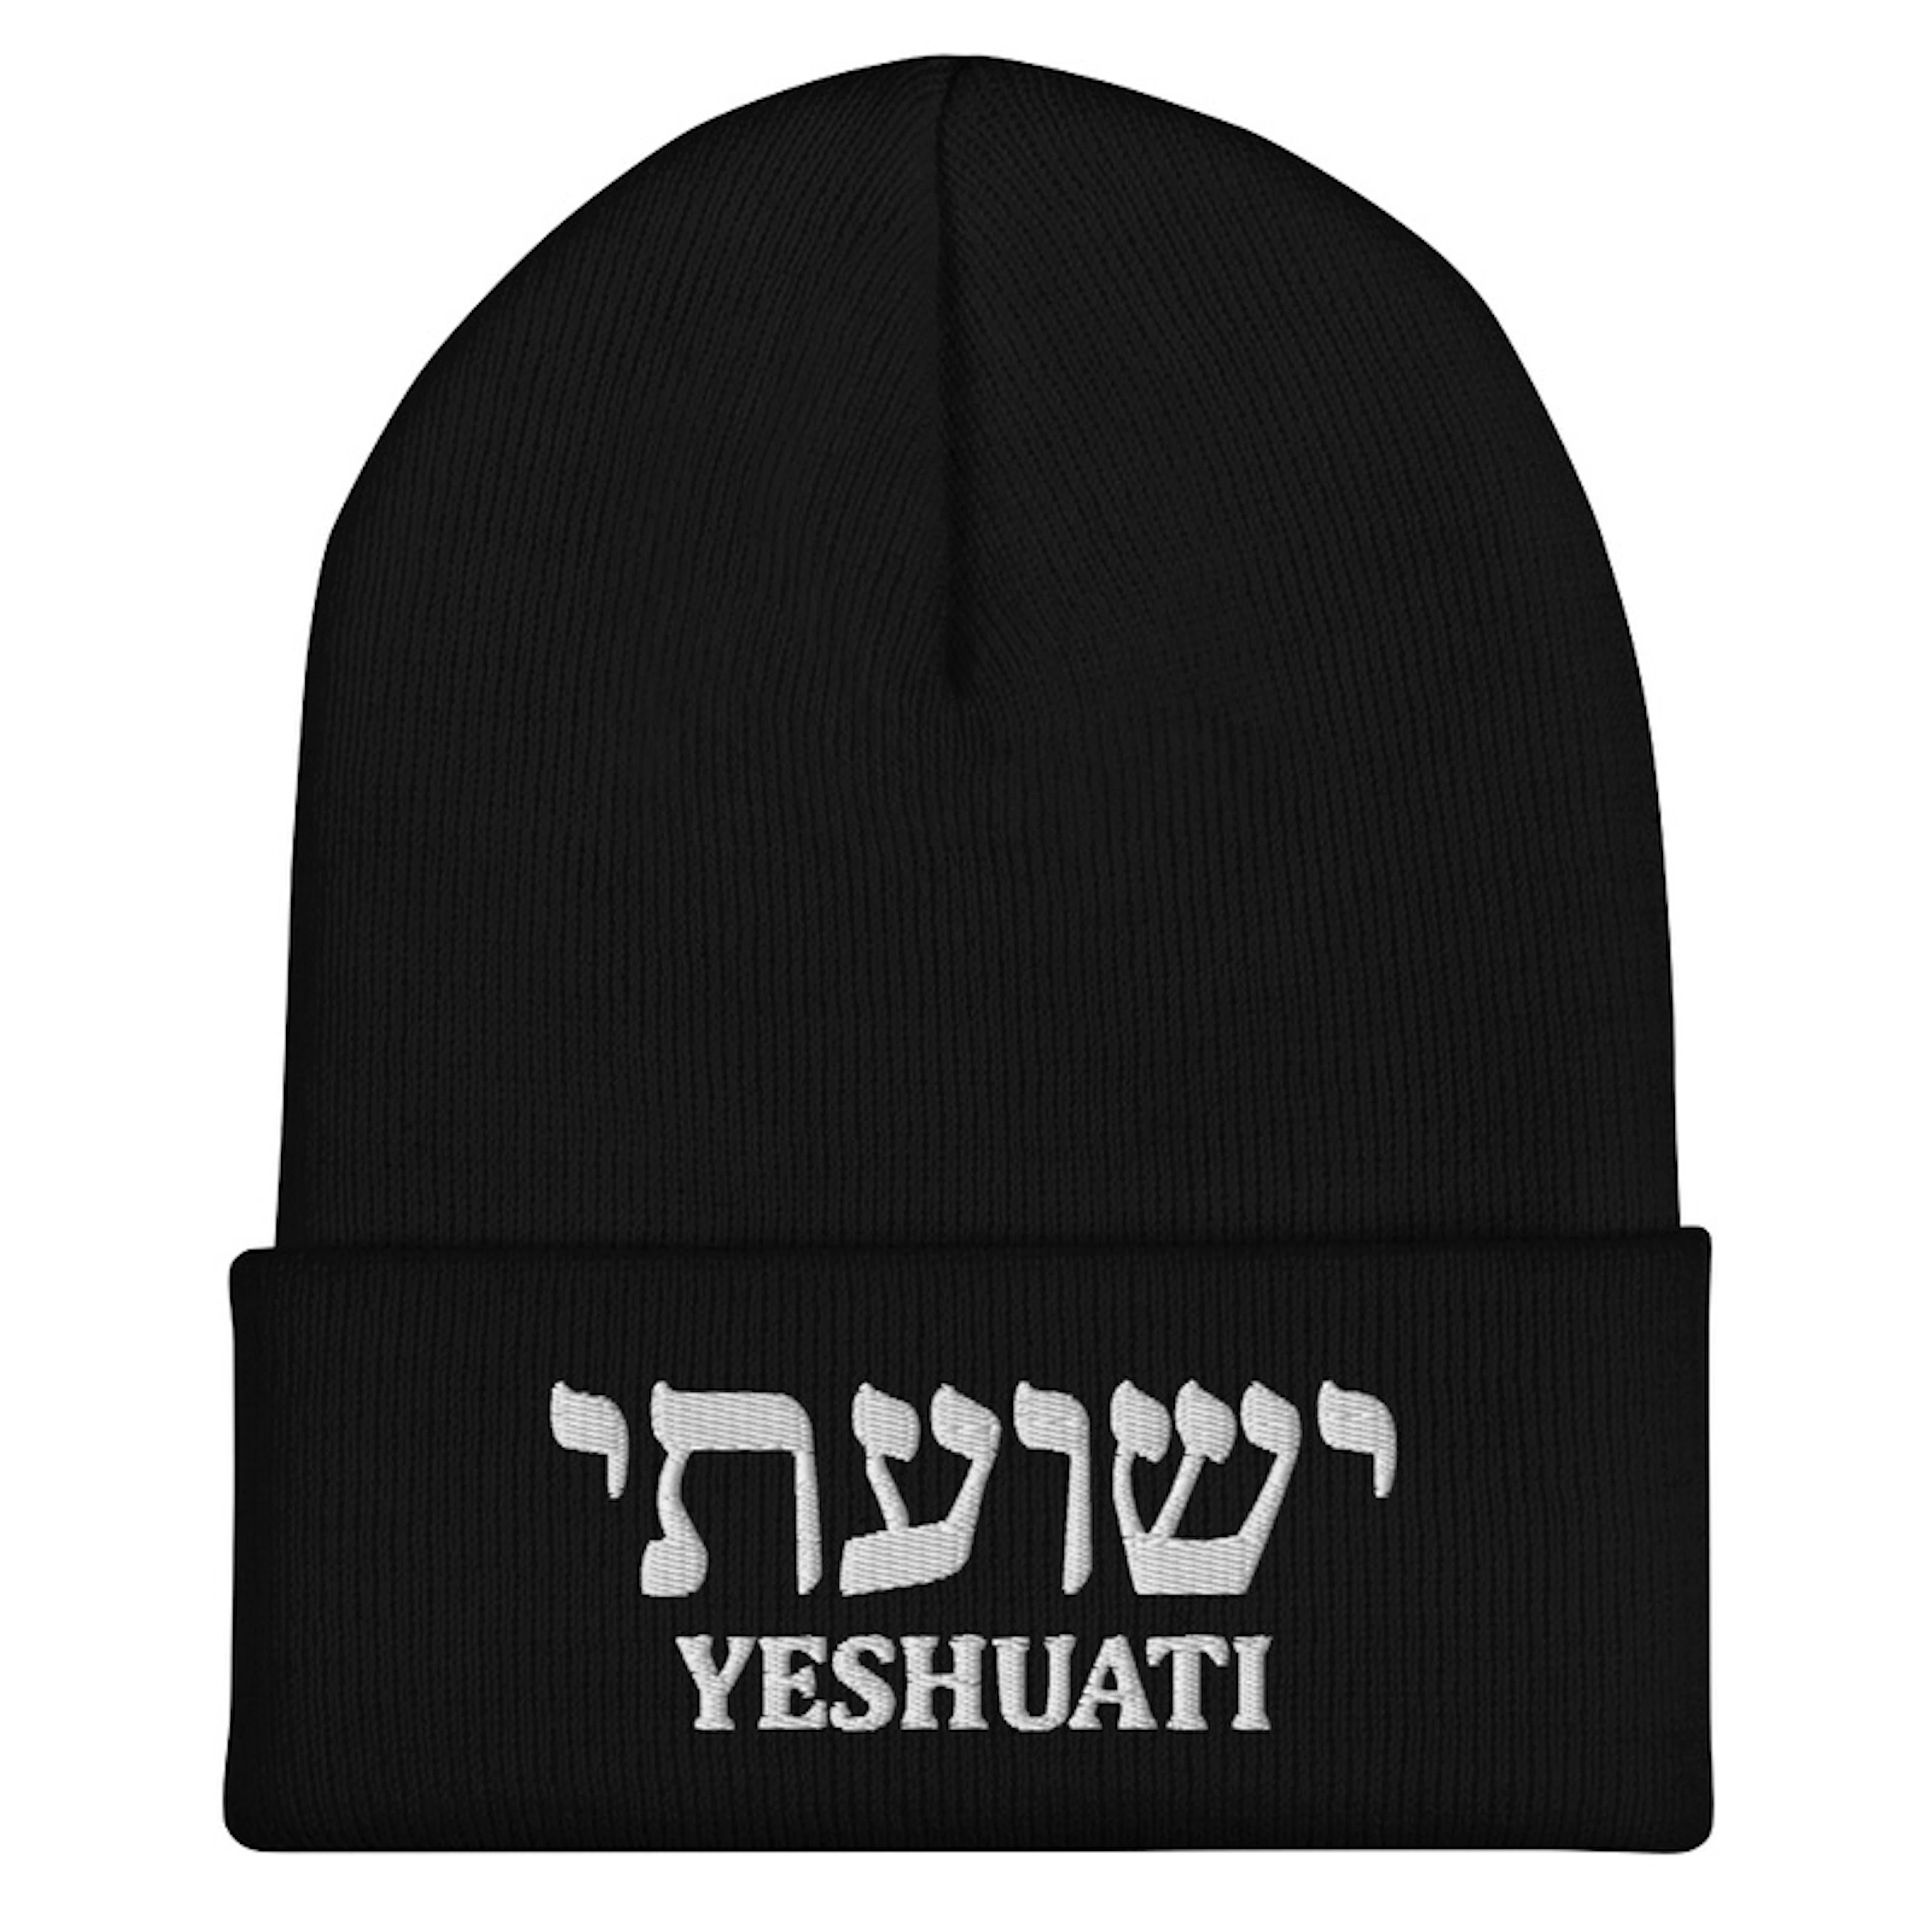 YESHUATI (My Salvation) Hebrew Beanie